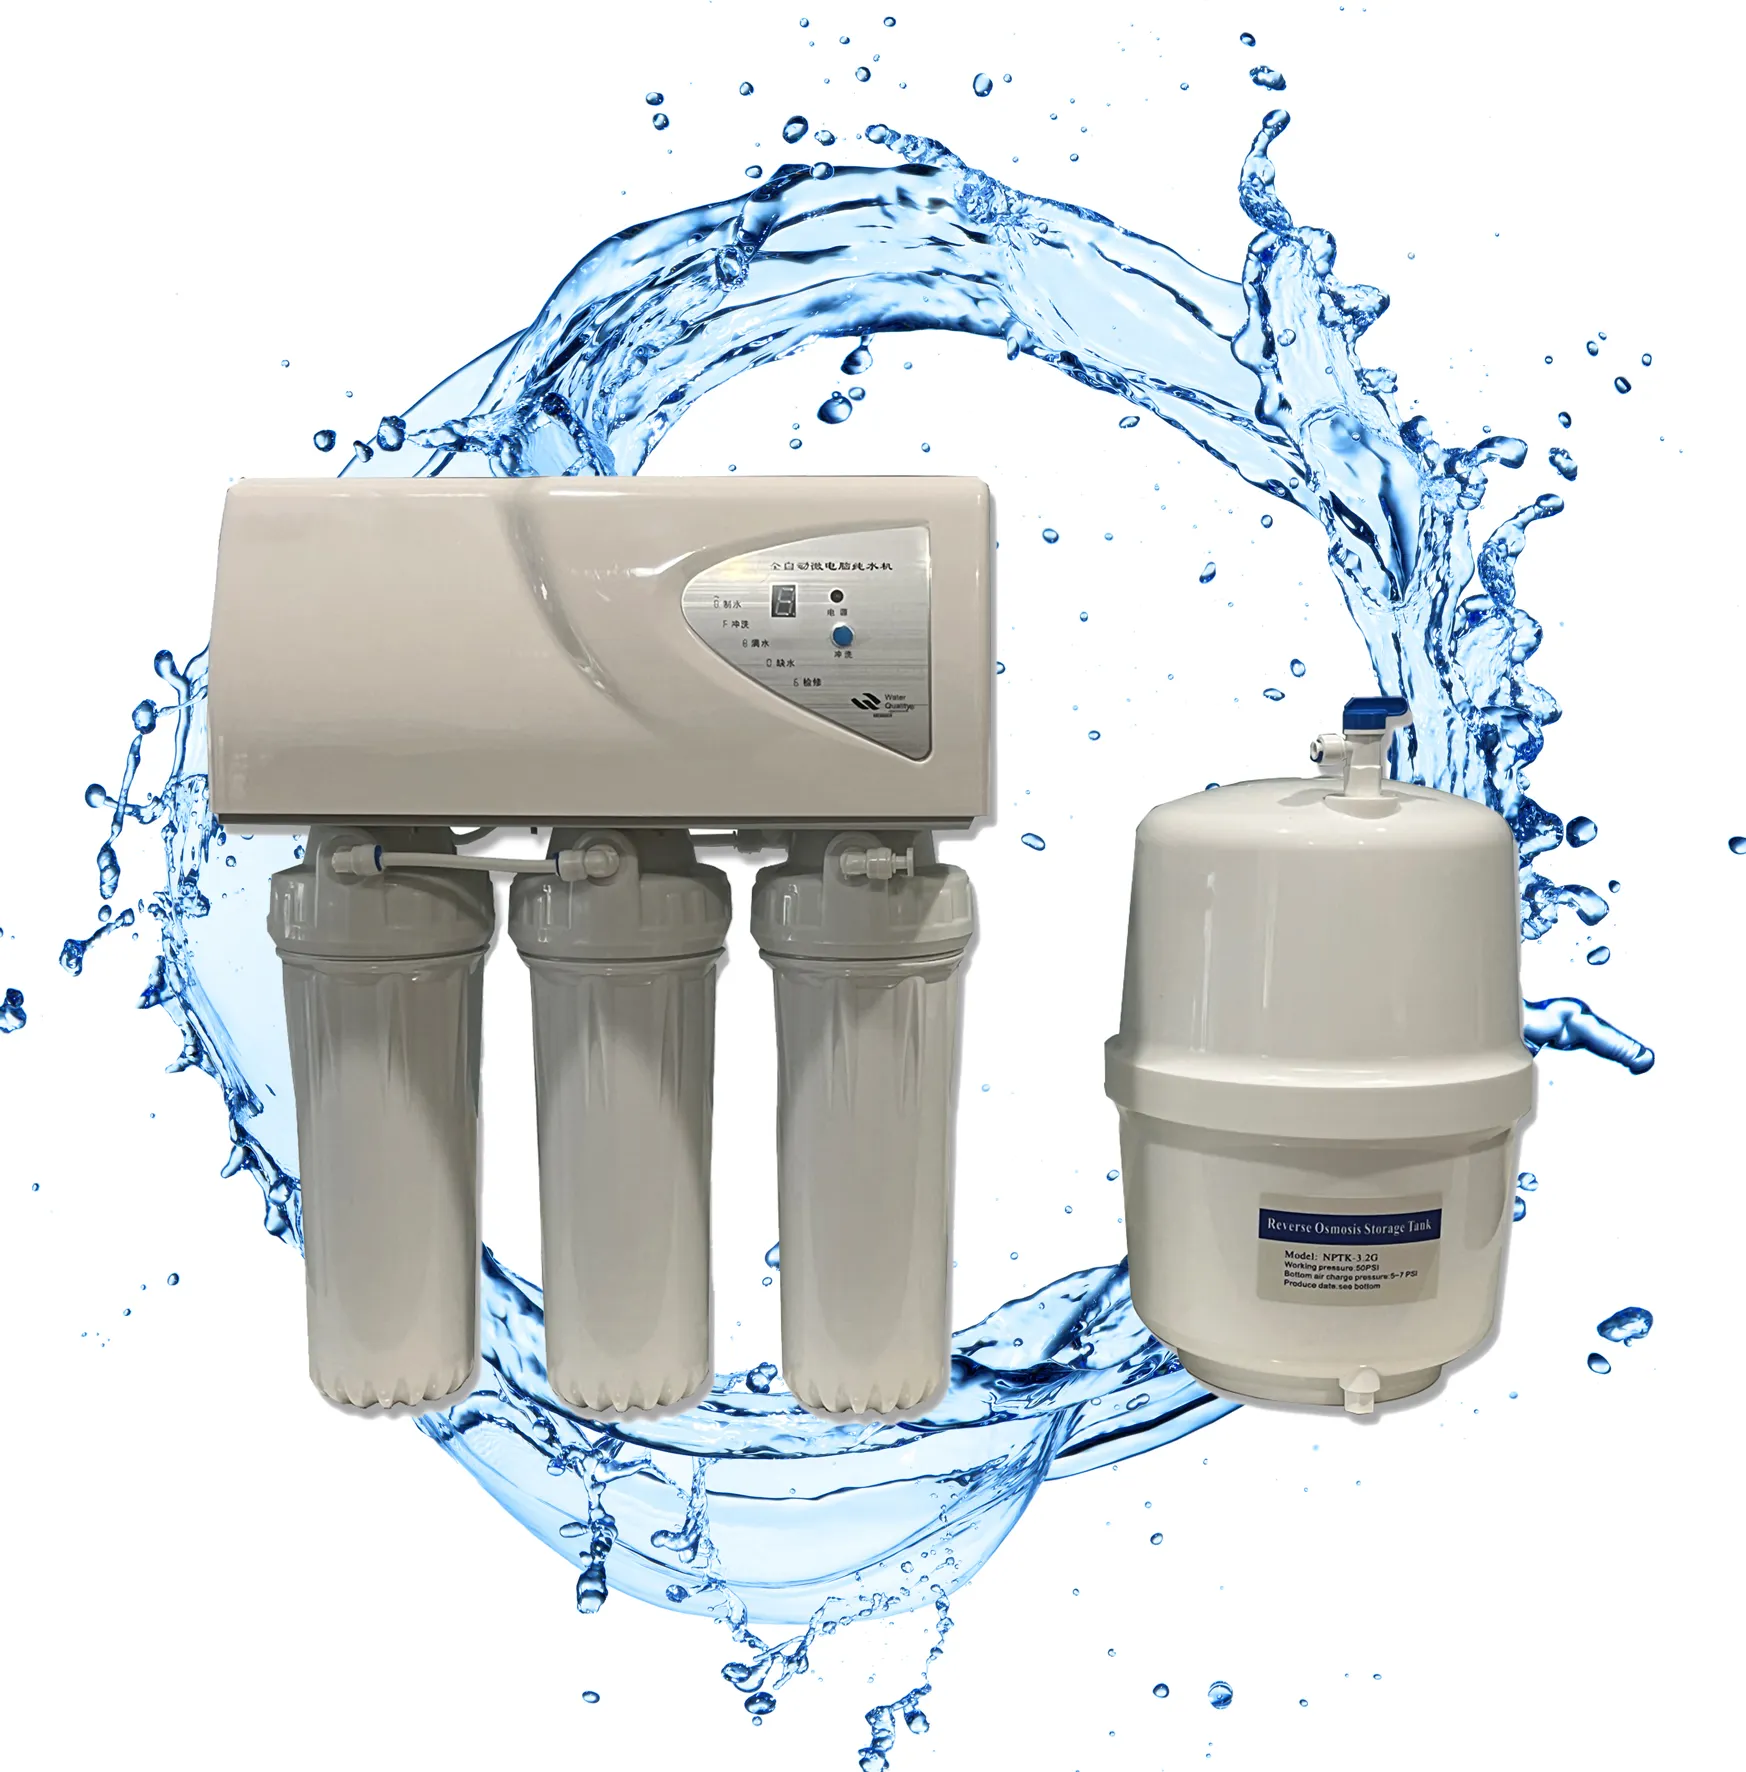 Sistema de purificación de agua para el hogar, tratamiento de agua Ro para uso doméstico